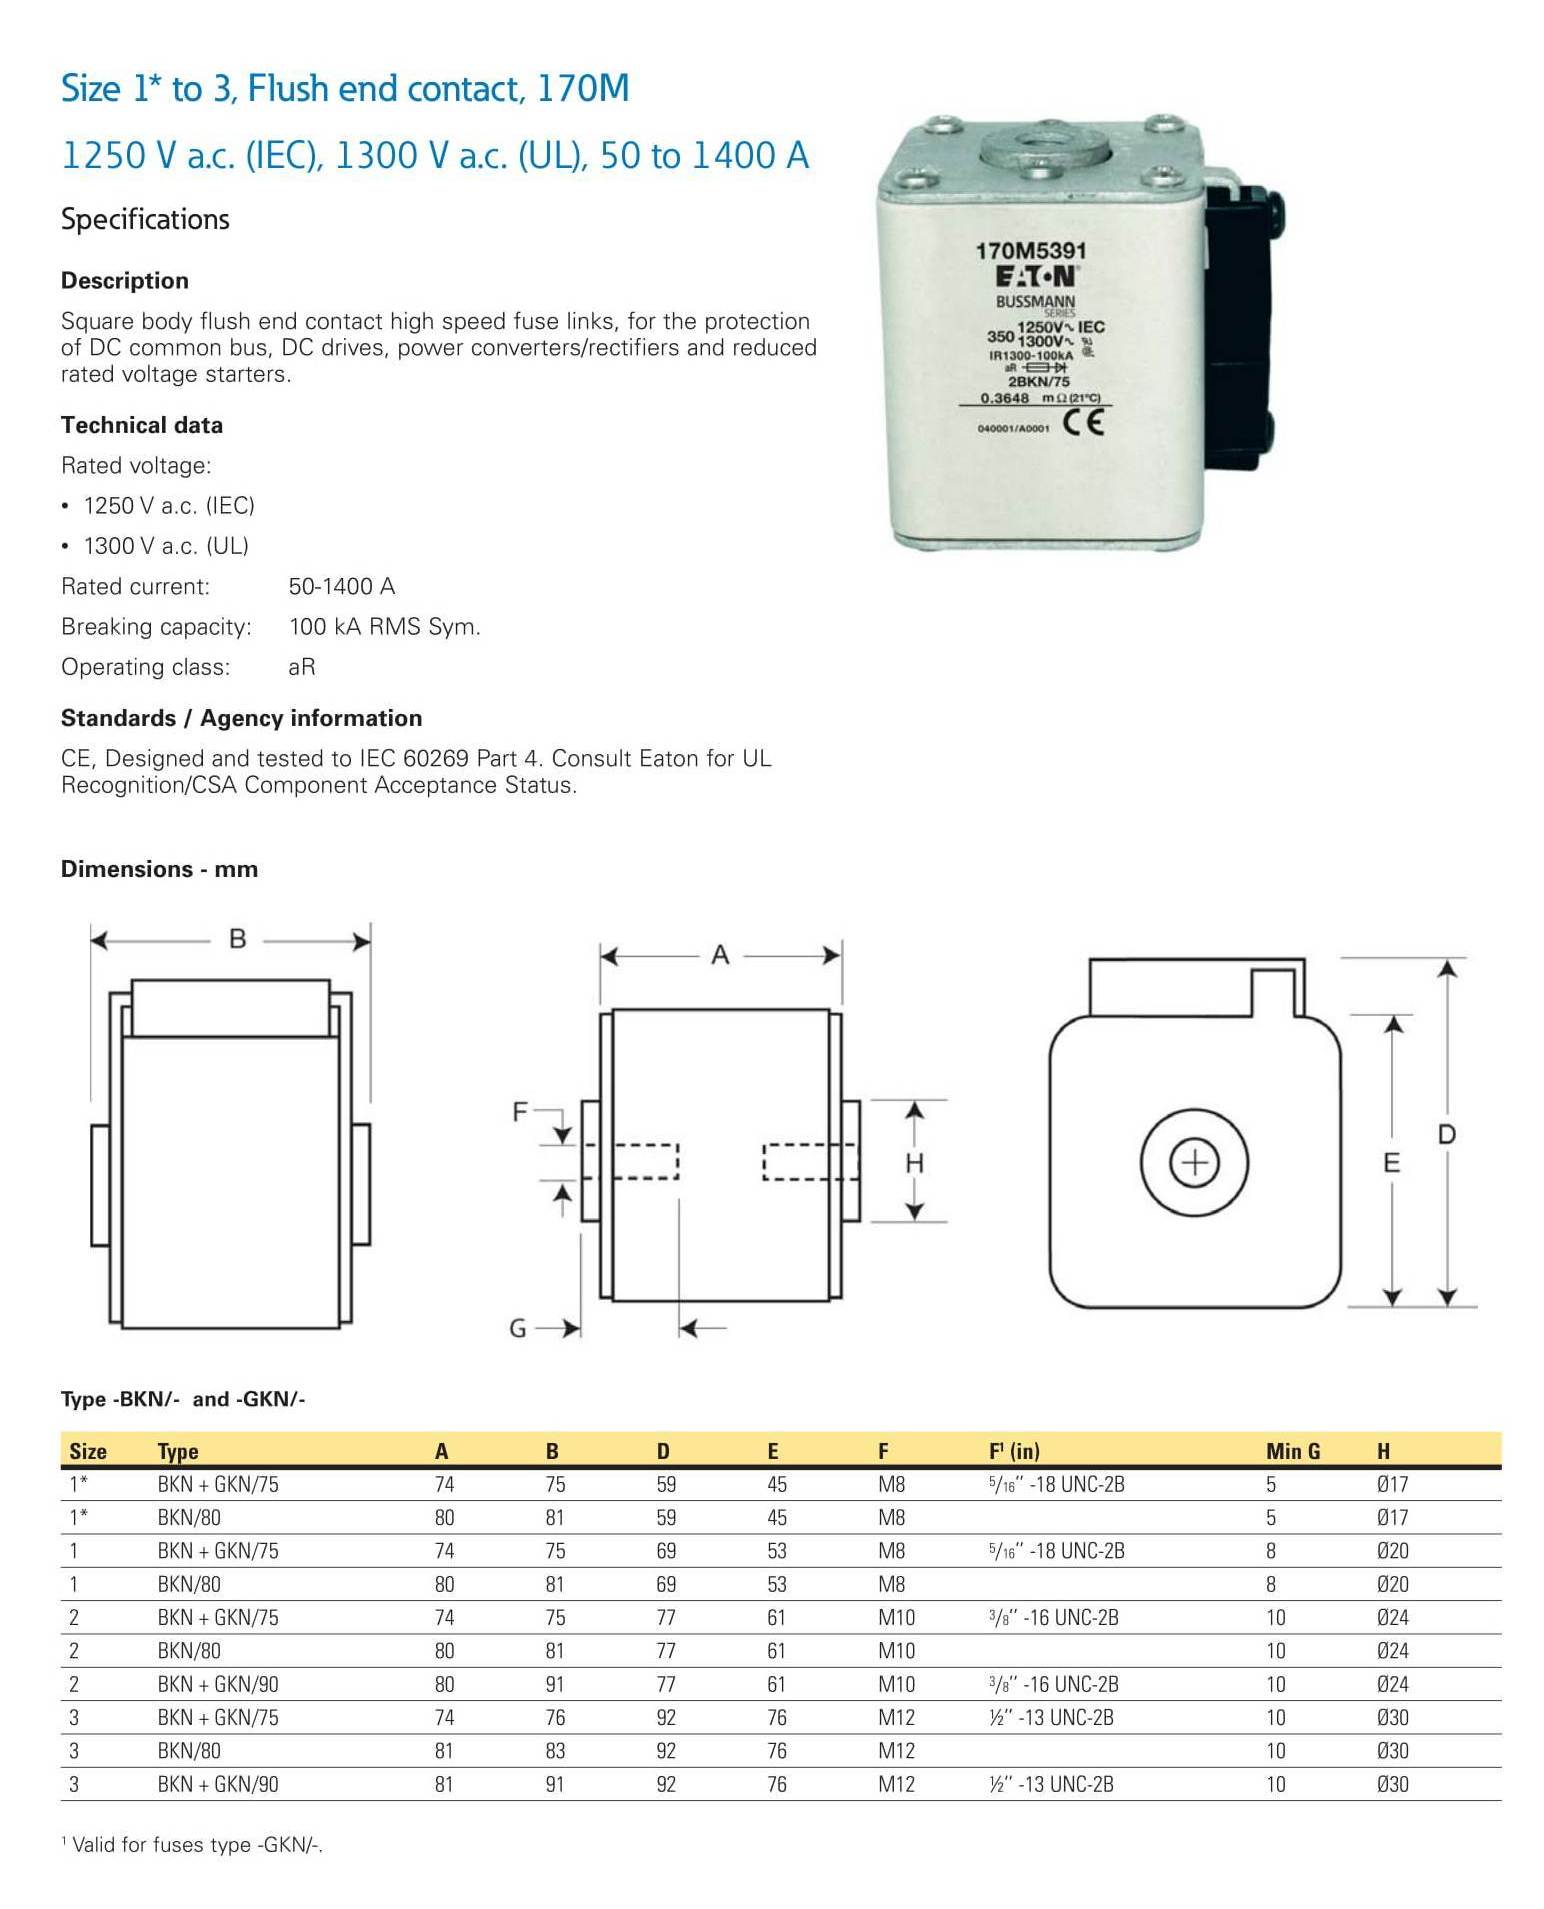 Square Body Fuse Links 1250V(IEC), 1300V(UL) 50 to 1400A